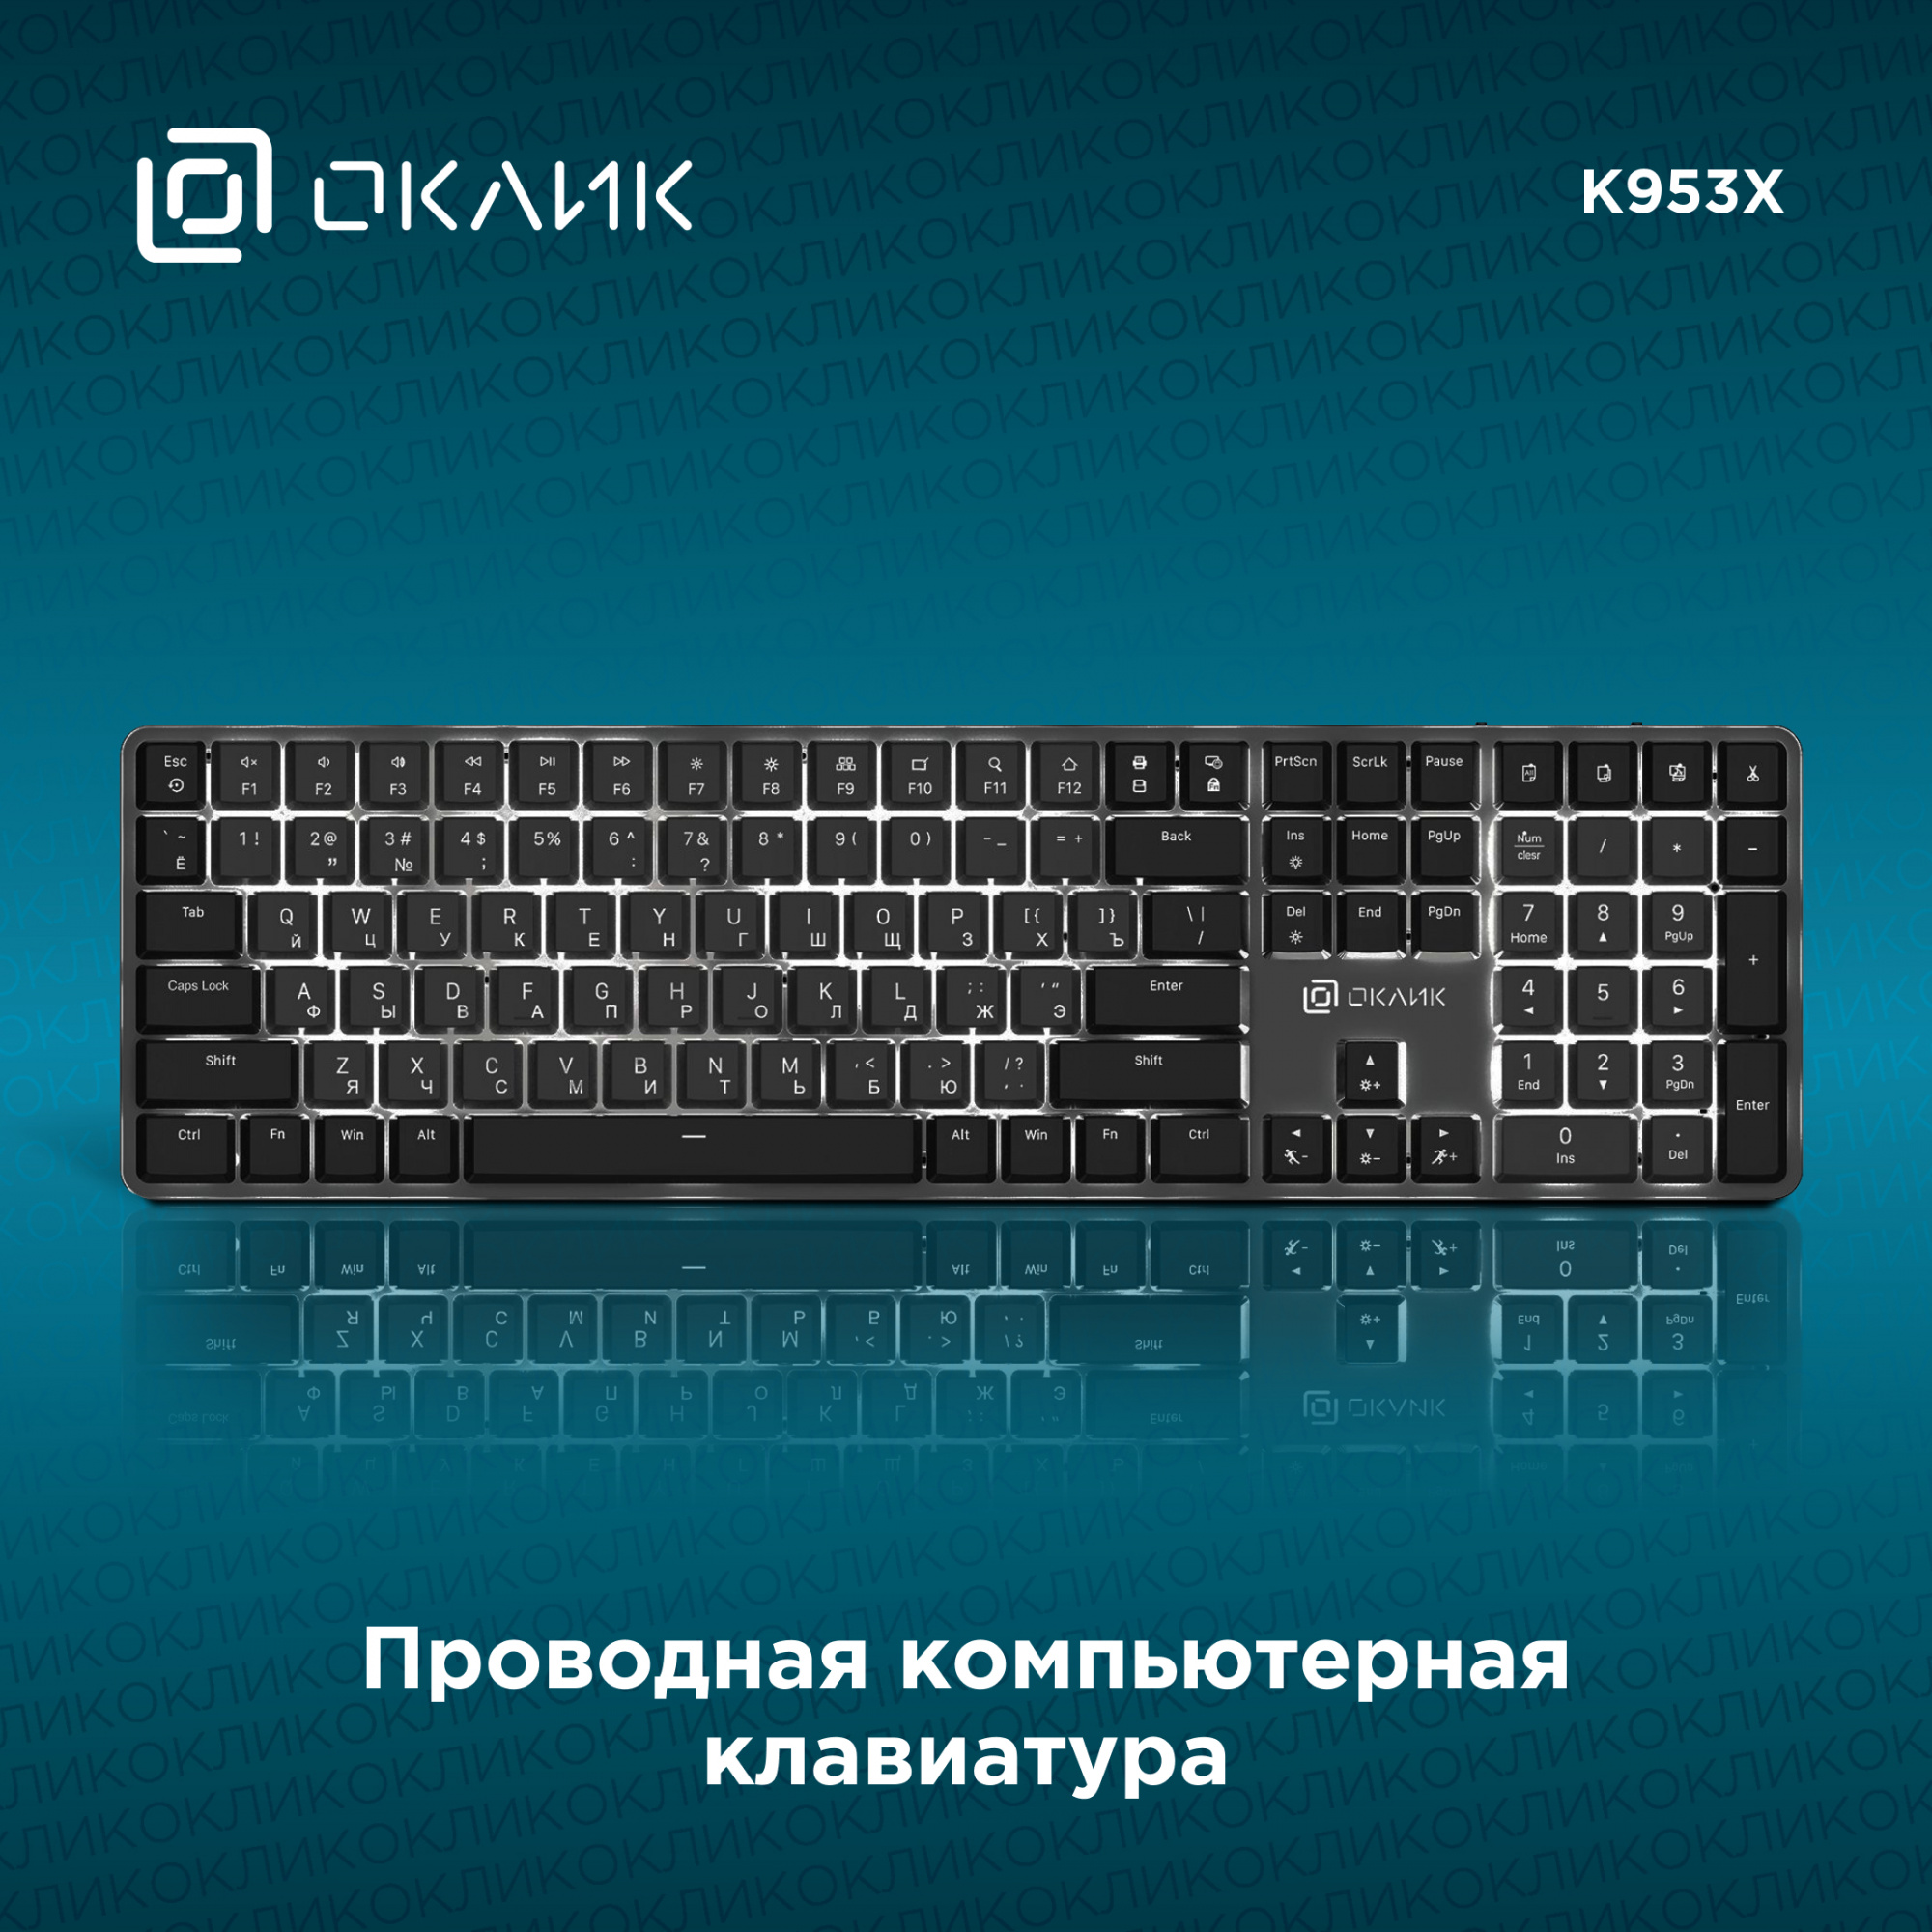 Клавиатура Оклик K953X механическая черный/серый USB Multimedia LED (1901086)